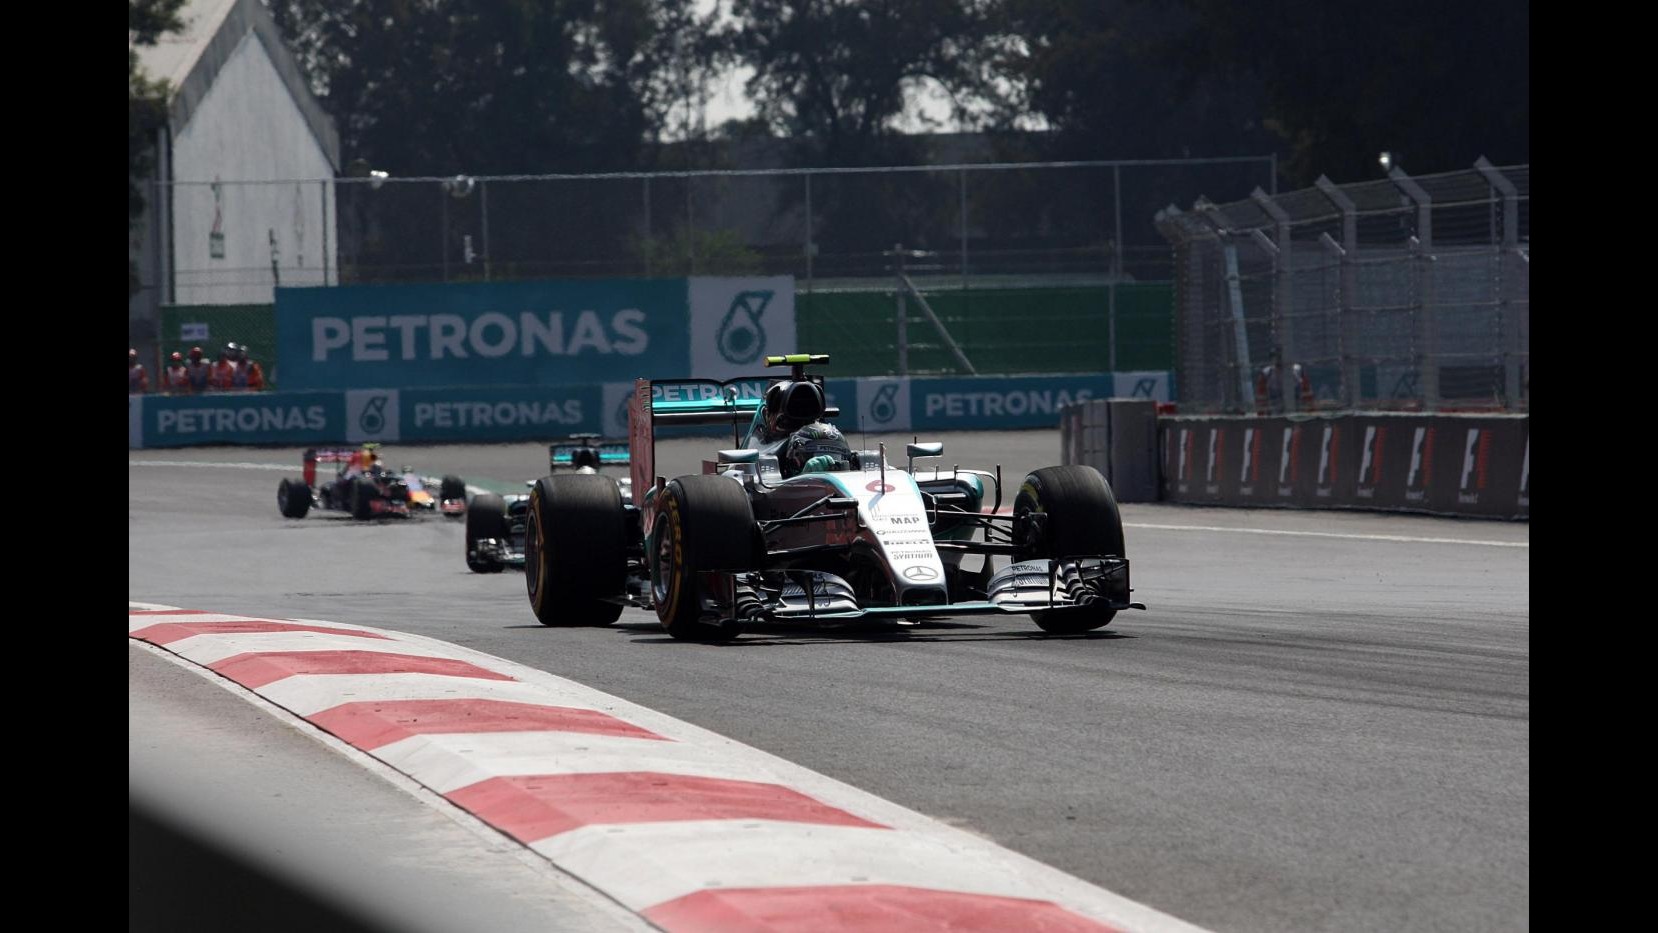 F1, Gp Messico: Rosberg vince davanti ad Hamilton, Ferrari fuori